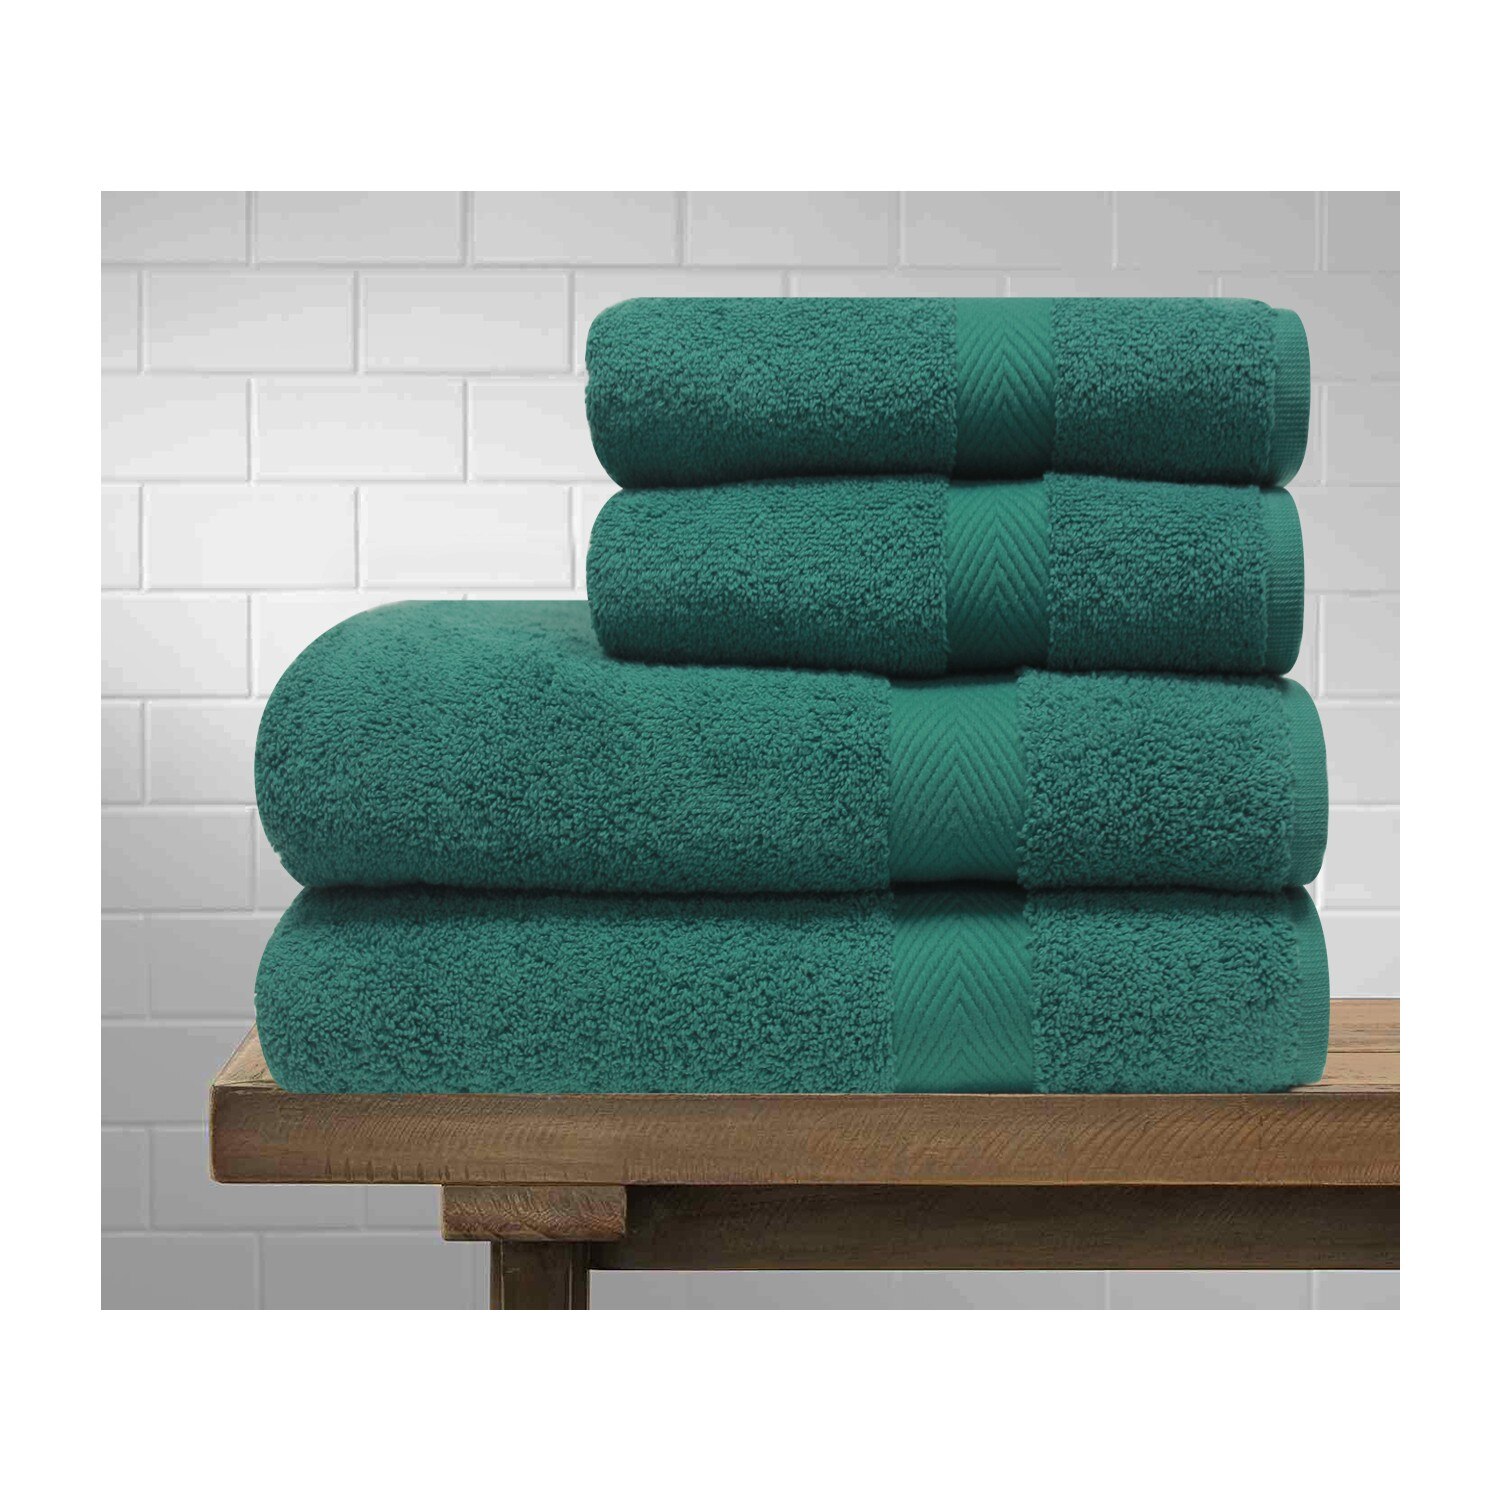 Dagliv çavuş mønstret smaragdgrønt håndklædesæt: Grøn